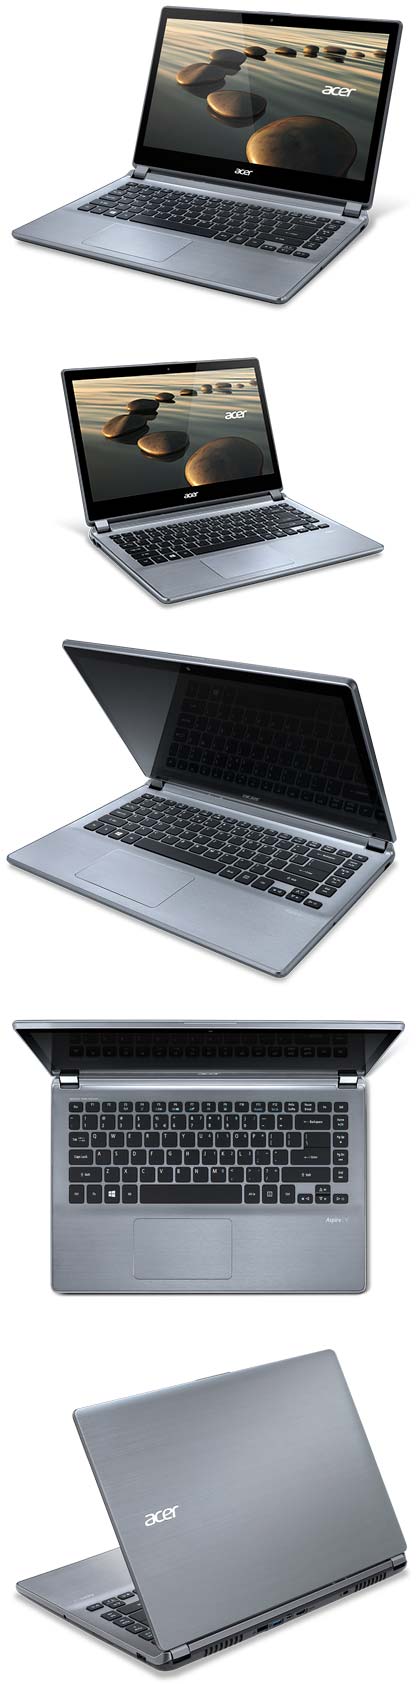 Новый ультрабук от Acer - Aspire V7-482P-A54D/H